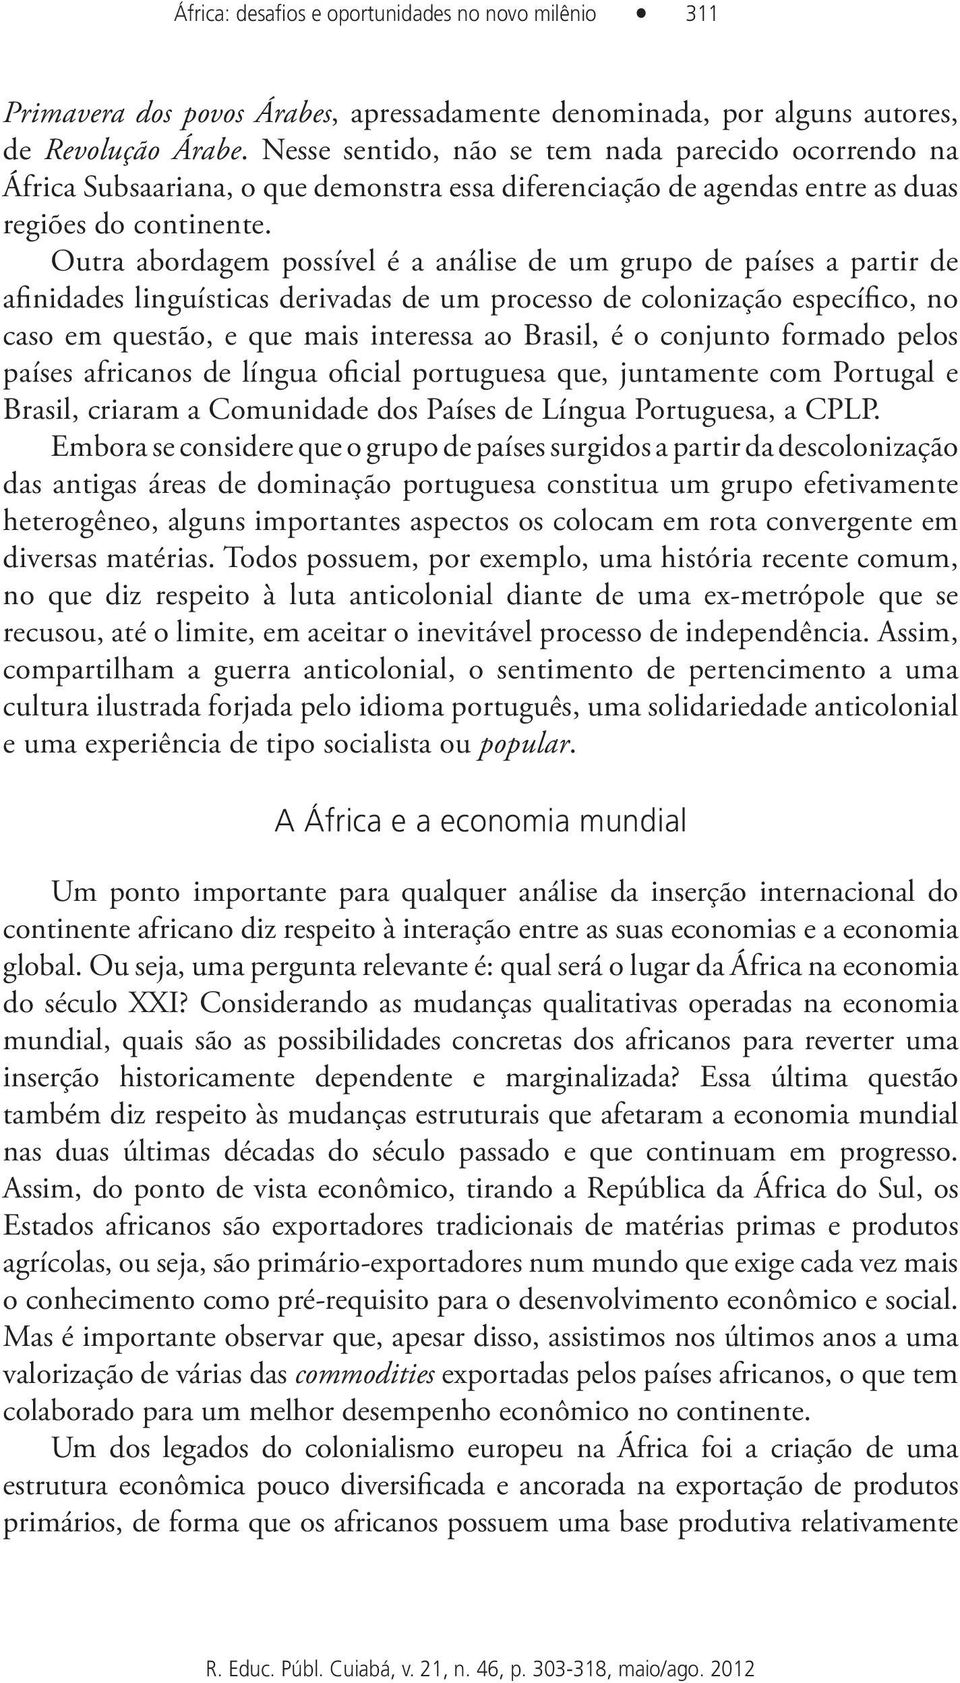 Outra abordagem possível é a análise de um grupo de países a partir de afinidades linguísticas derivadas de um processo de colonização específico, no caso em questão, e que mais interessa ao Brasil,